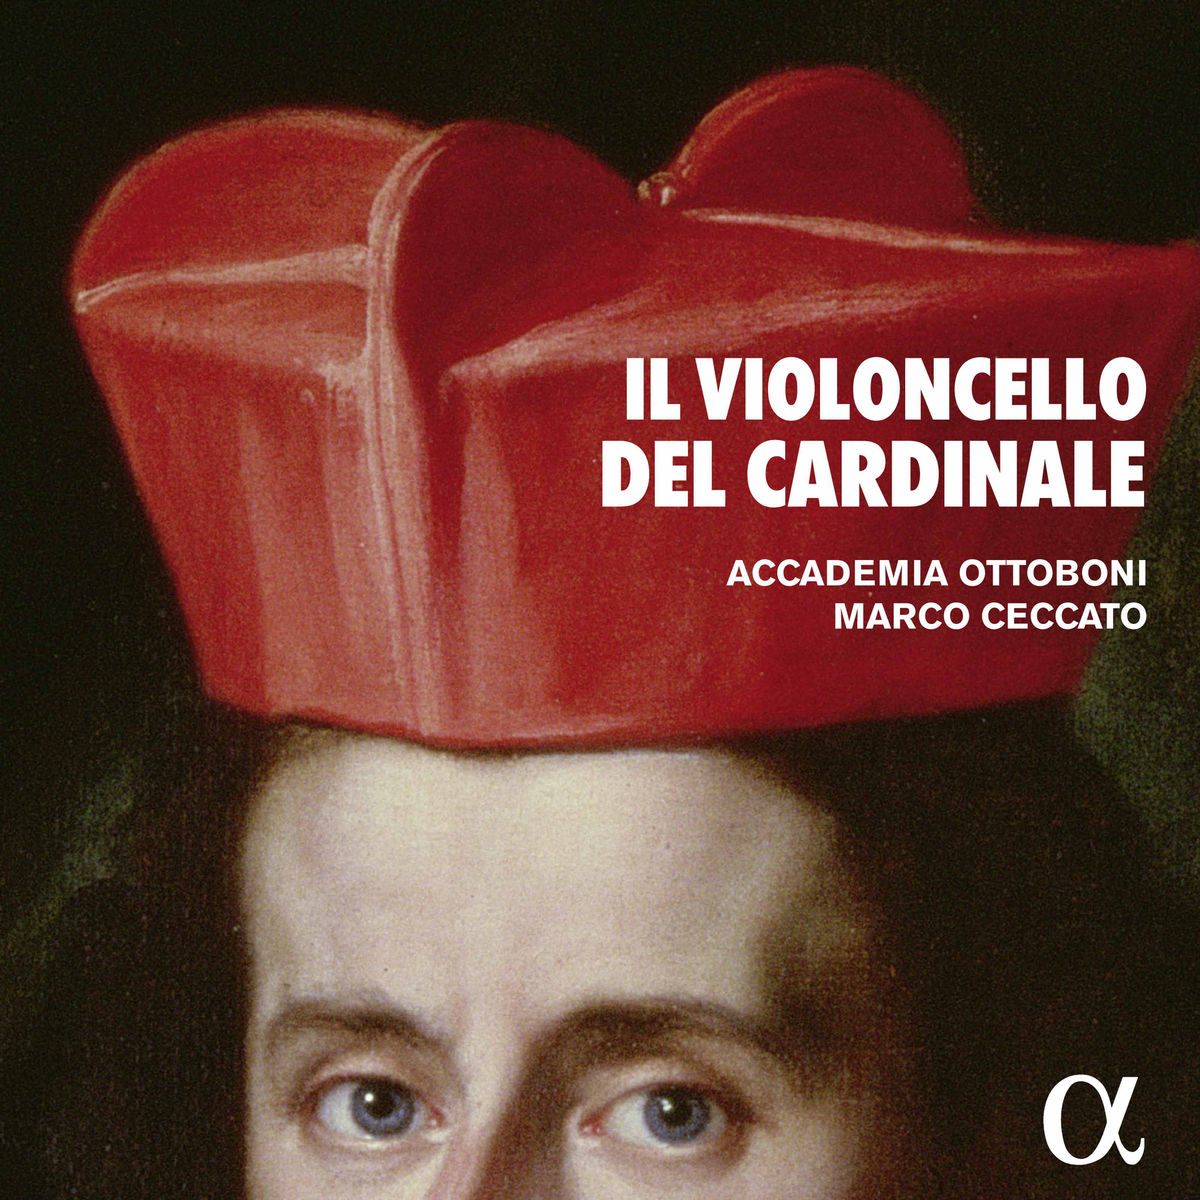 Accademia Ottoboni & Marco Ceccato - Il violoncello del Cardinale (2017) [Qobuz FLAC 24bit/96kHz]